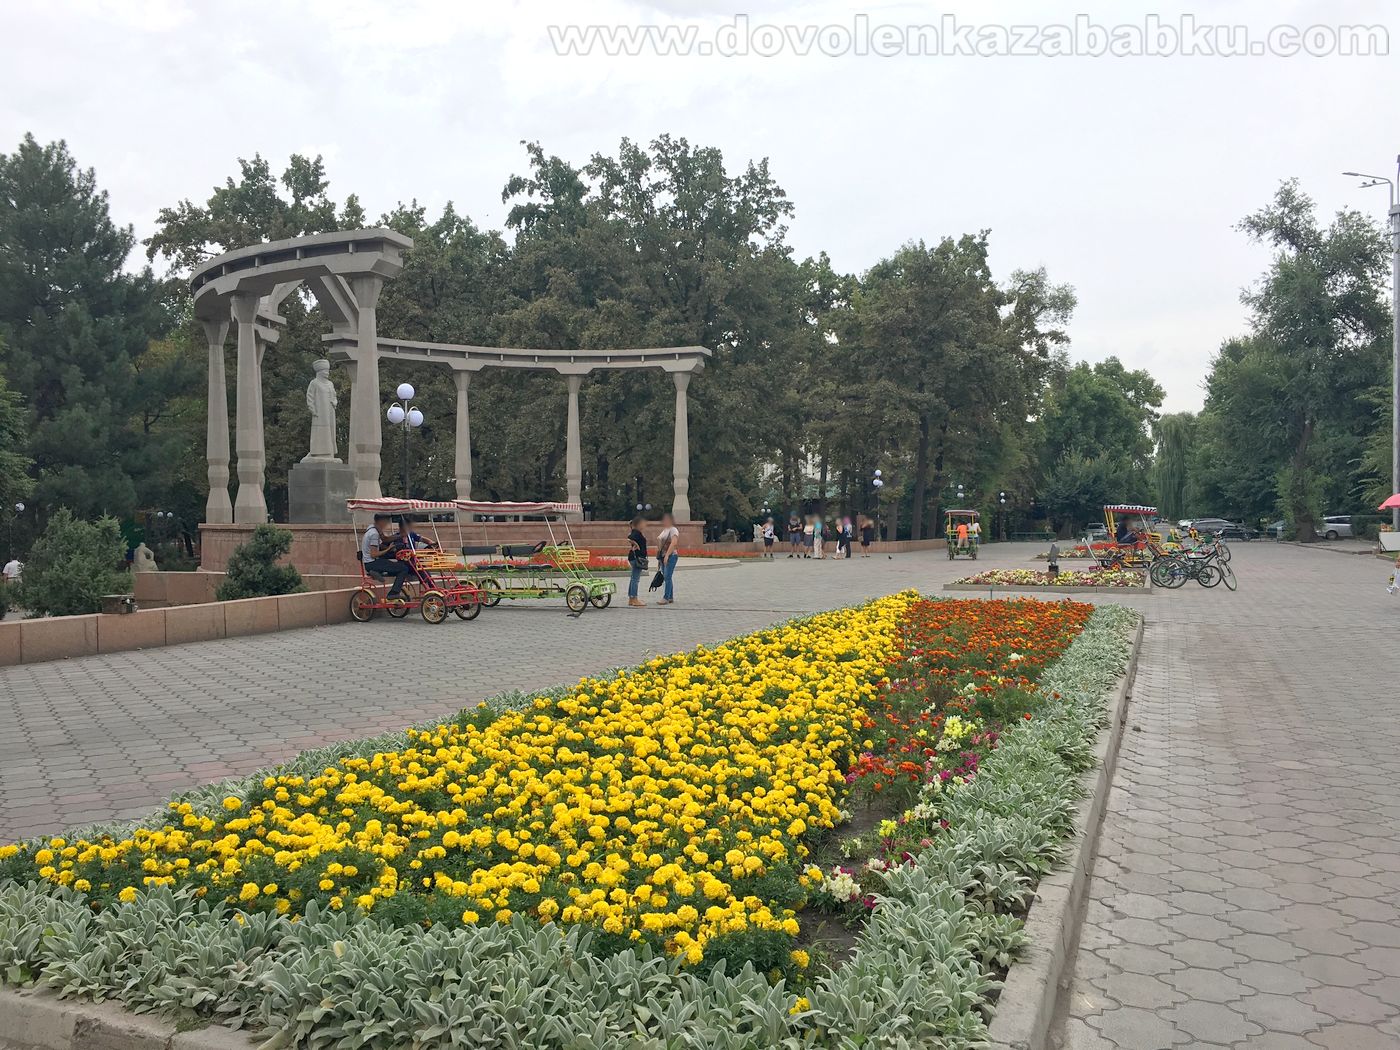 Biškek, hlavné mesto Kirgizska